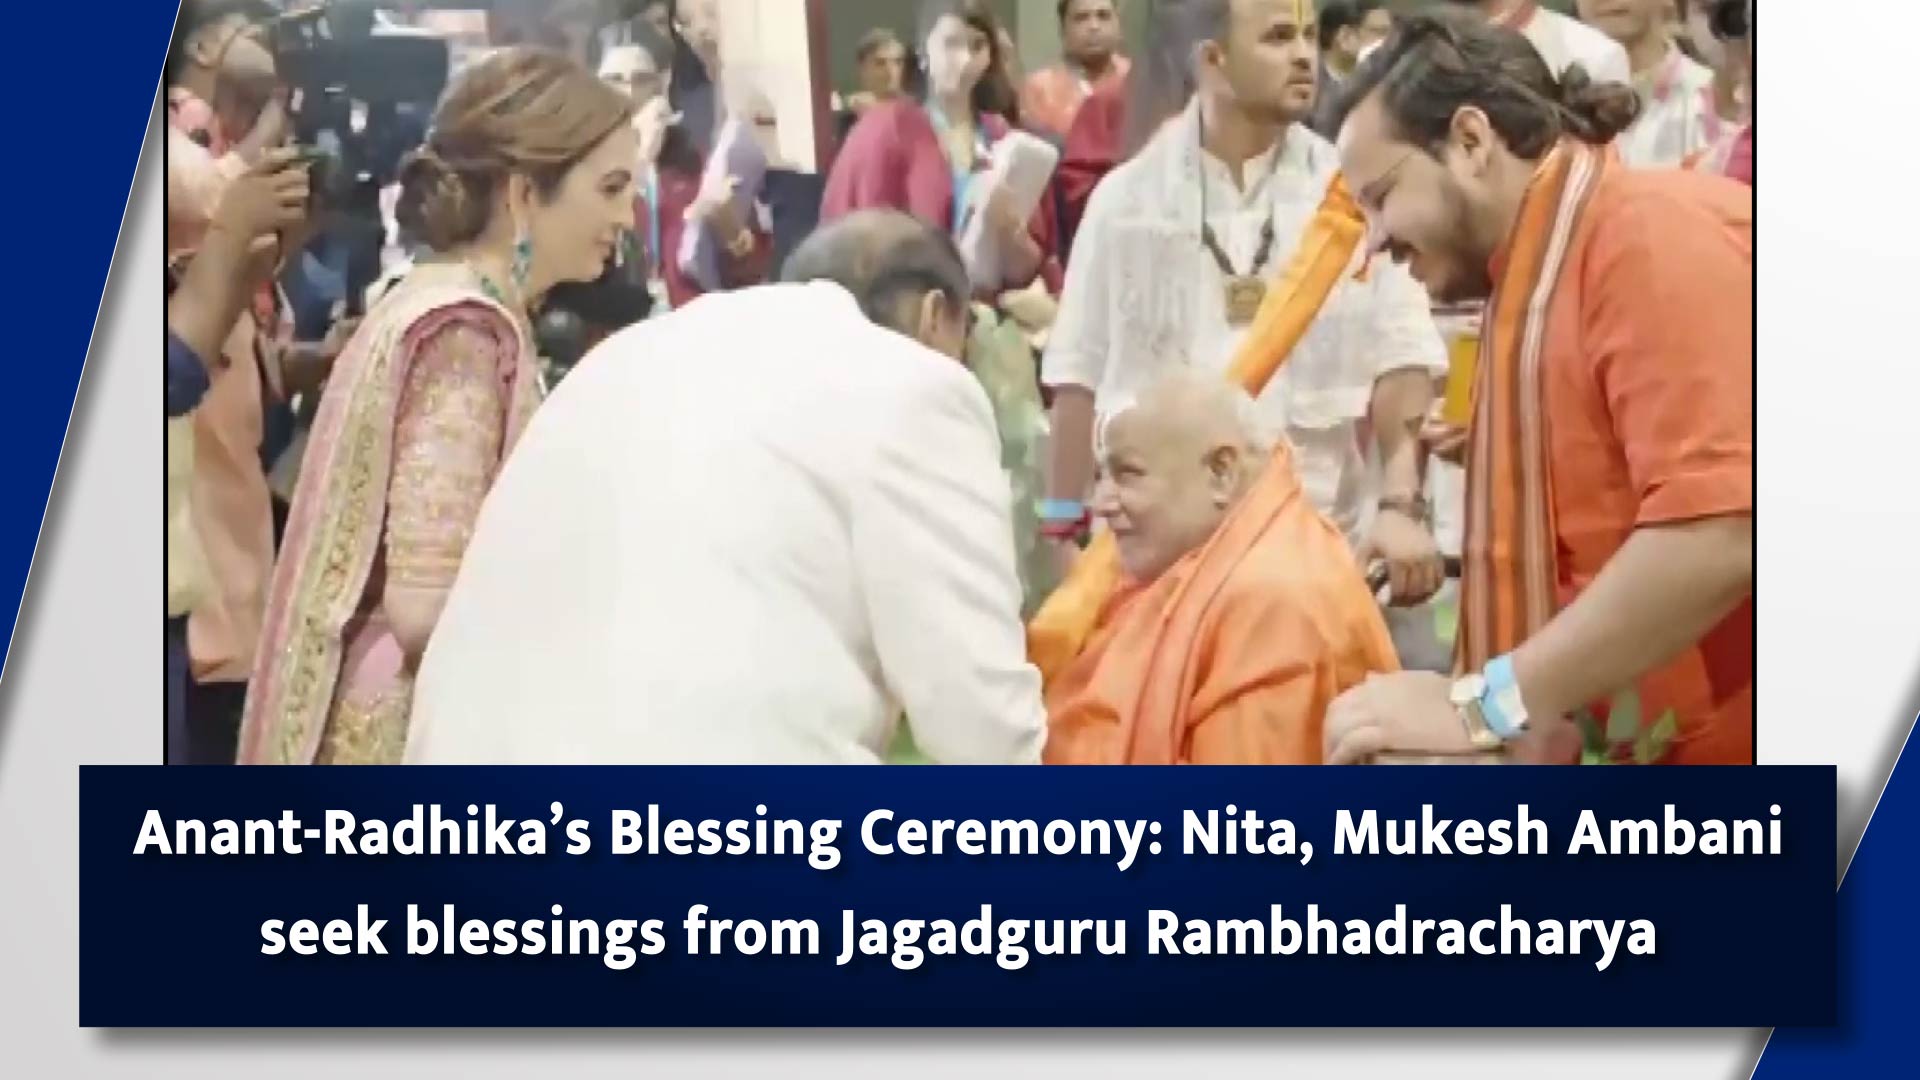 Anant-Radhikas Blessing Ceremony: Nita, Mukesh Ambani seek blessings from Jagadguru Rambhadracharya